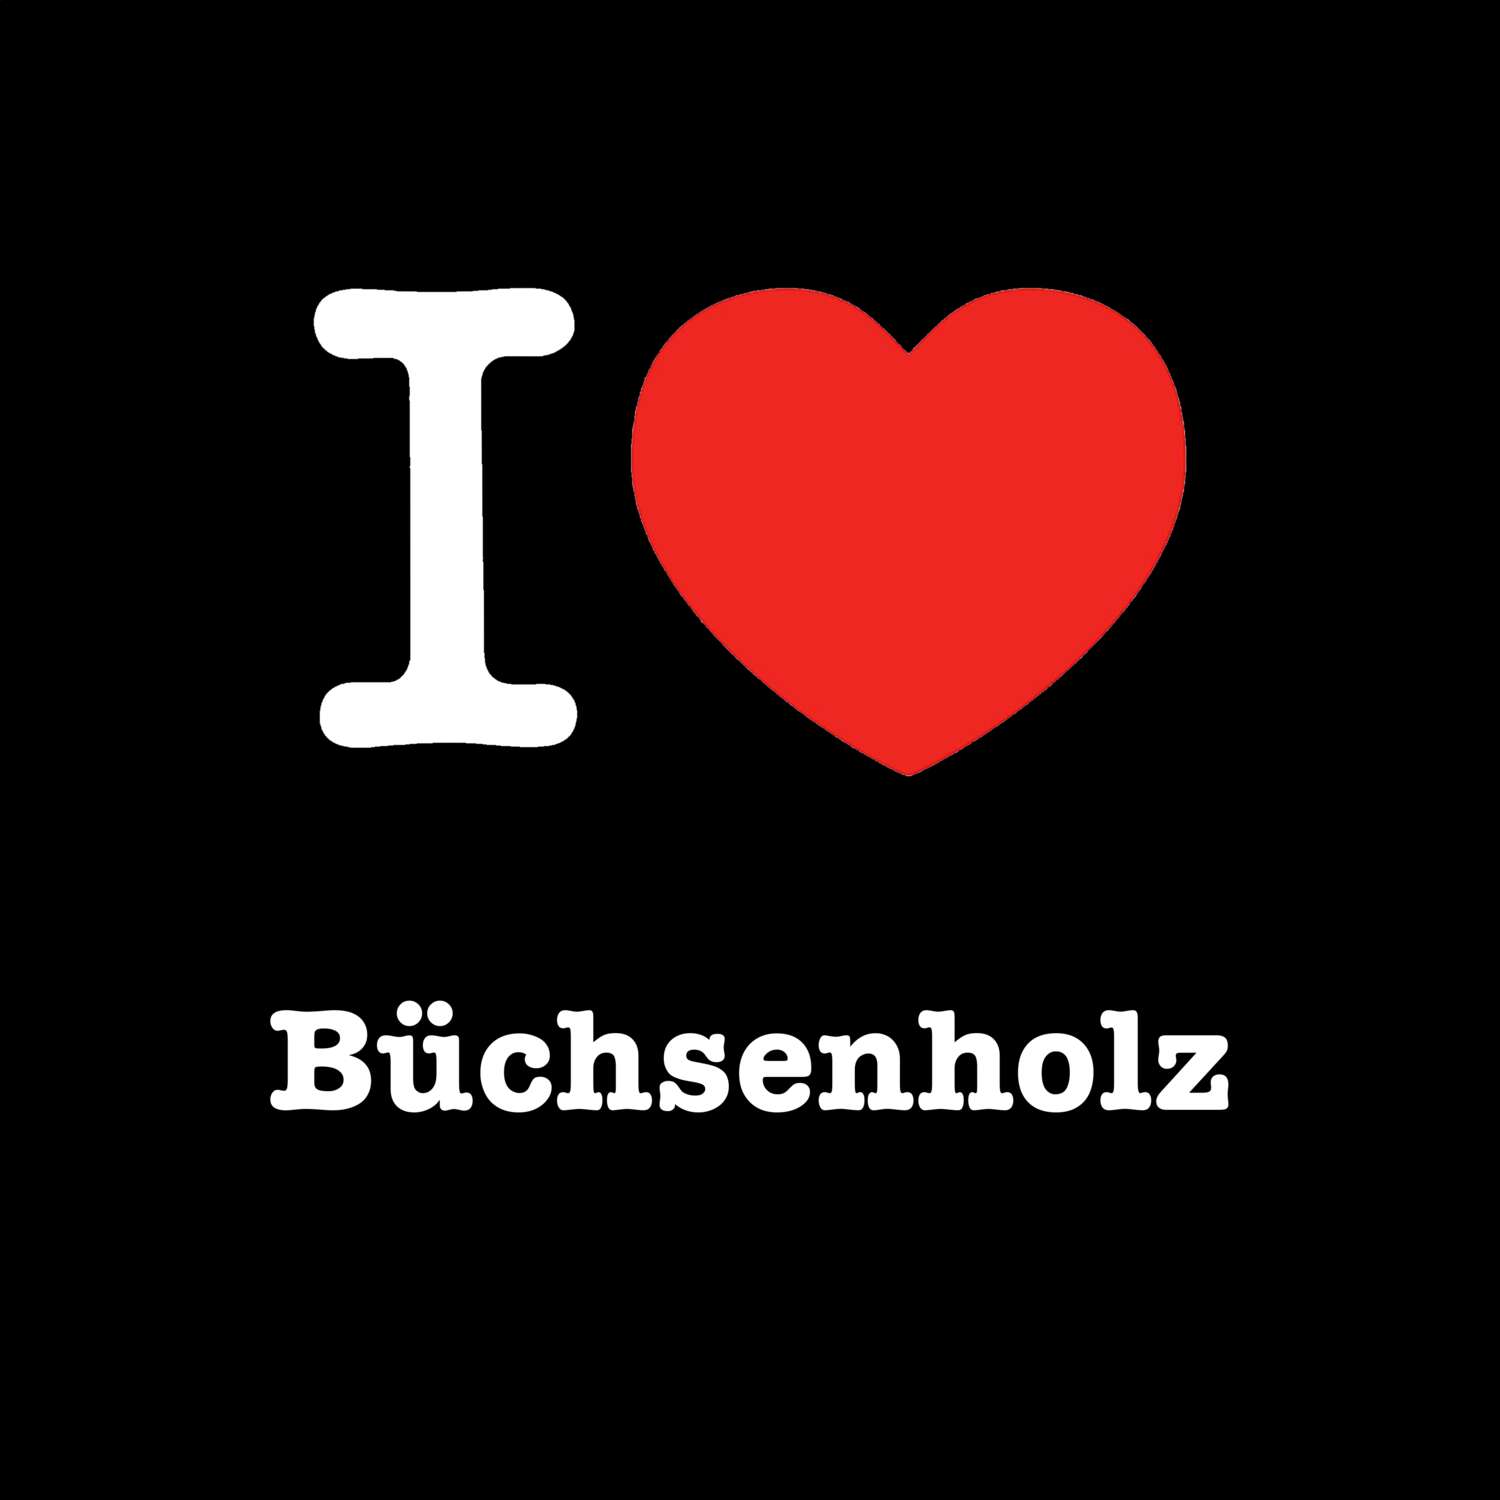 Büchsenholz T-Shirt »I love«